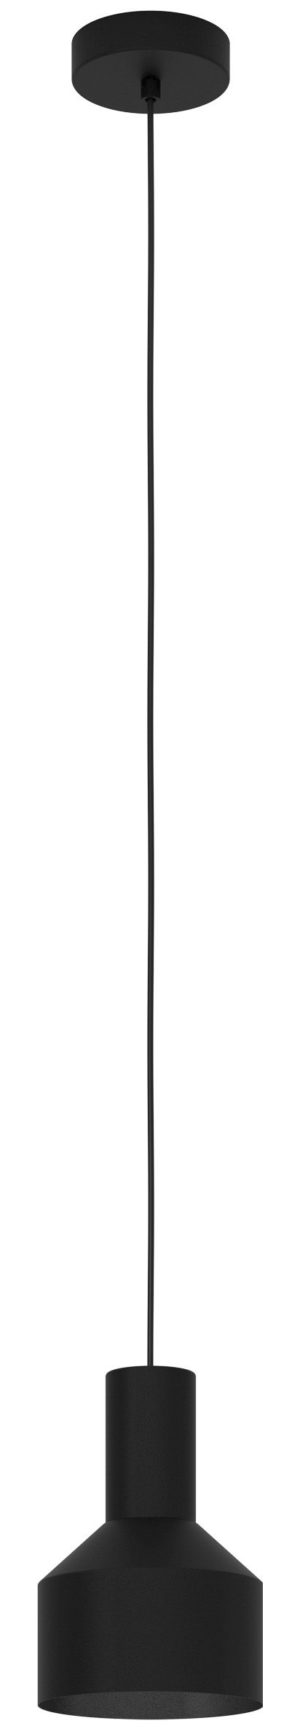 Casibare hanglamp - zwart Eglo Hanglamp 99551-EGLO